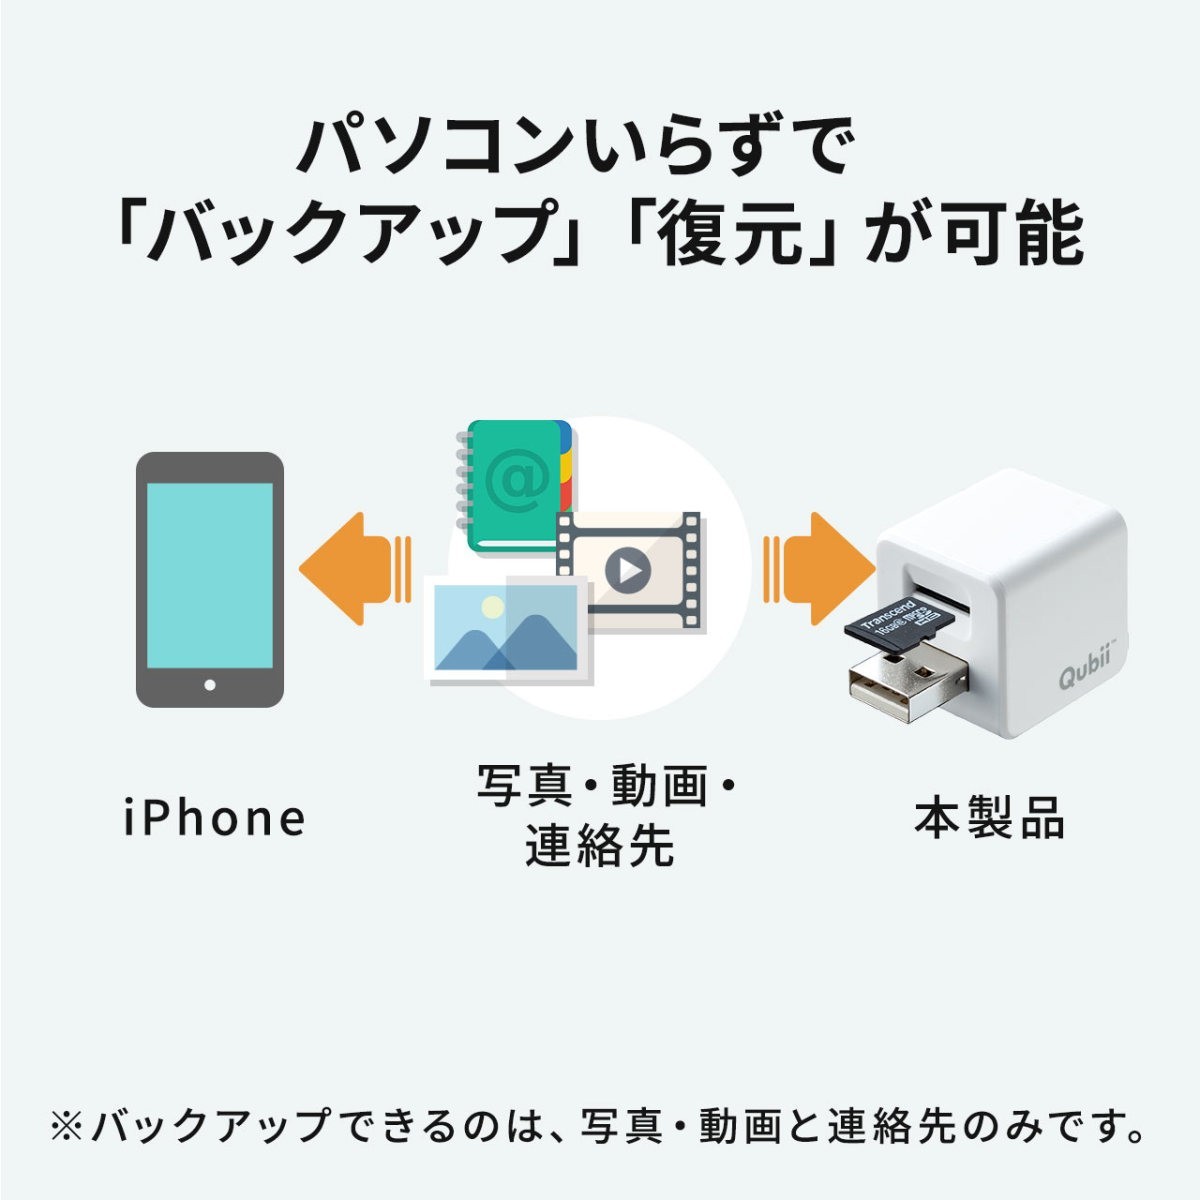 Qubii IPhoneバックアップ IPadバックアップ IPhoneカードリーダー